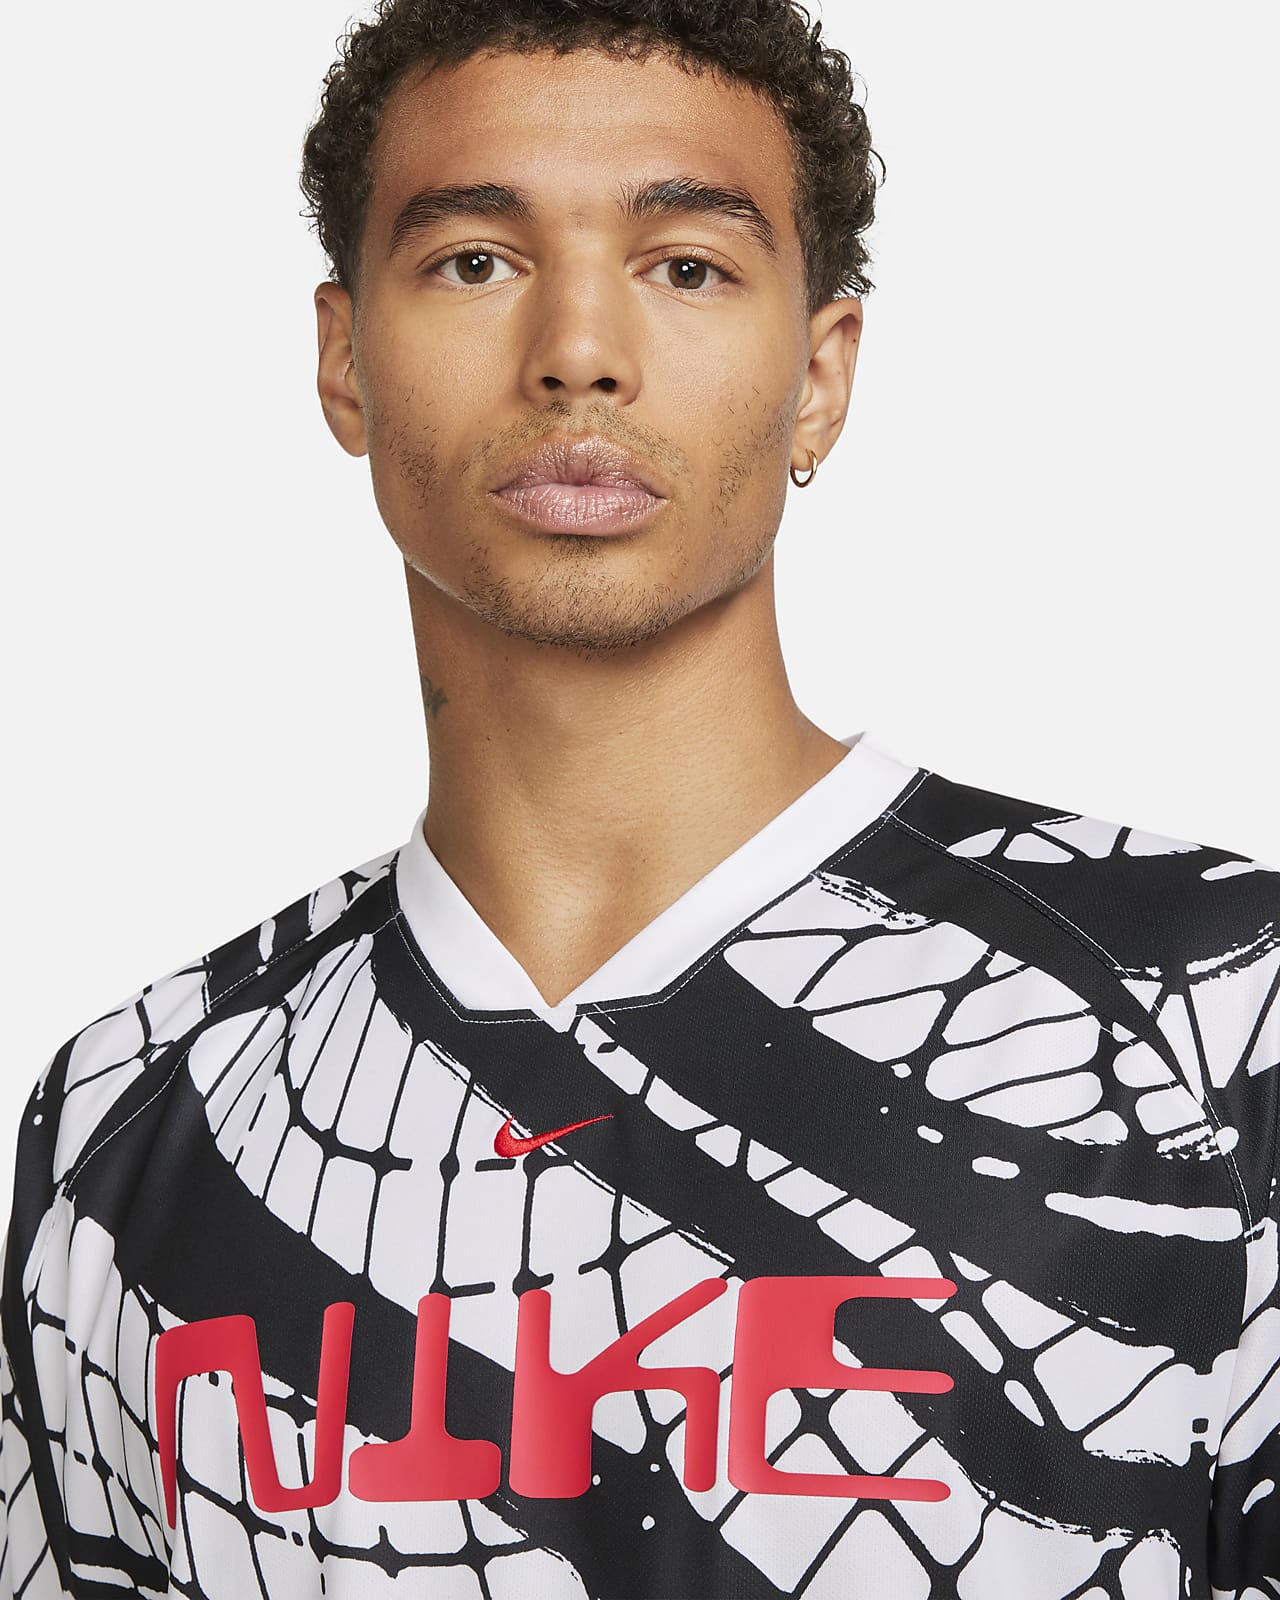 Nike Dri-FIT Men's Soccer Jersey